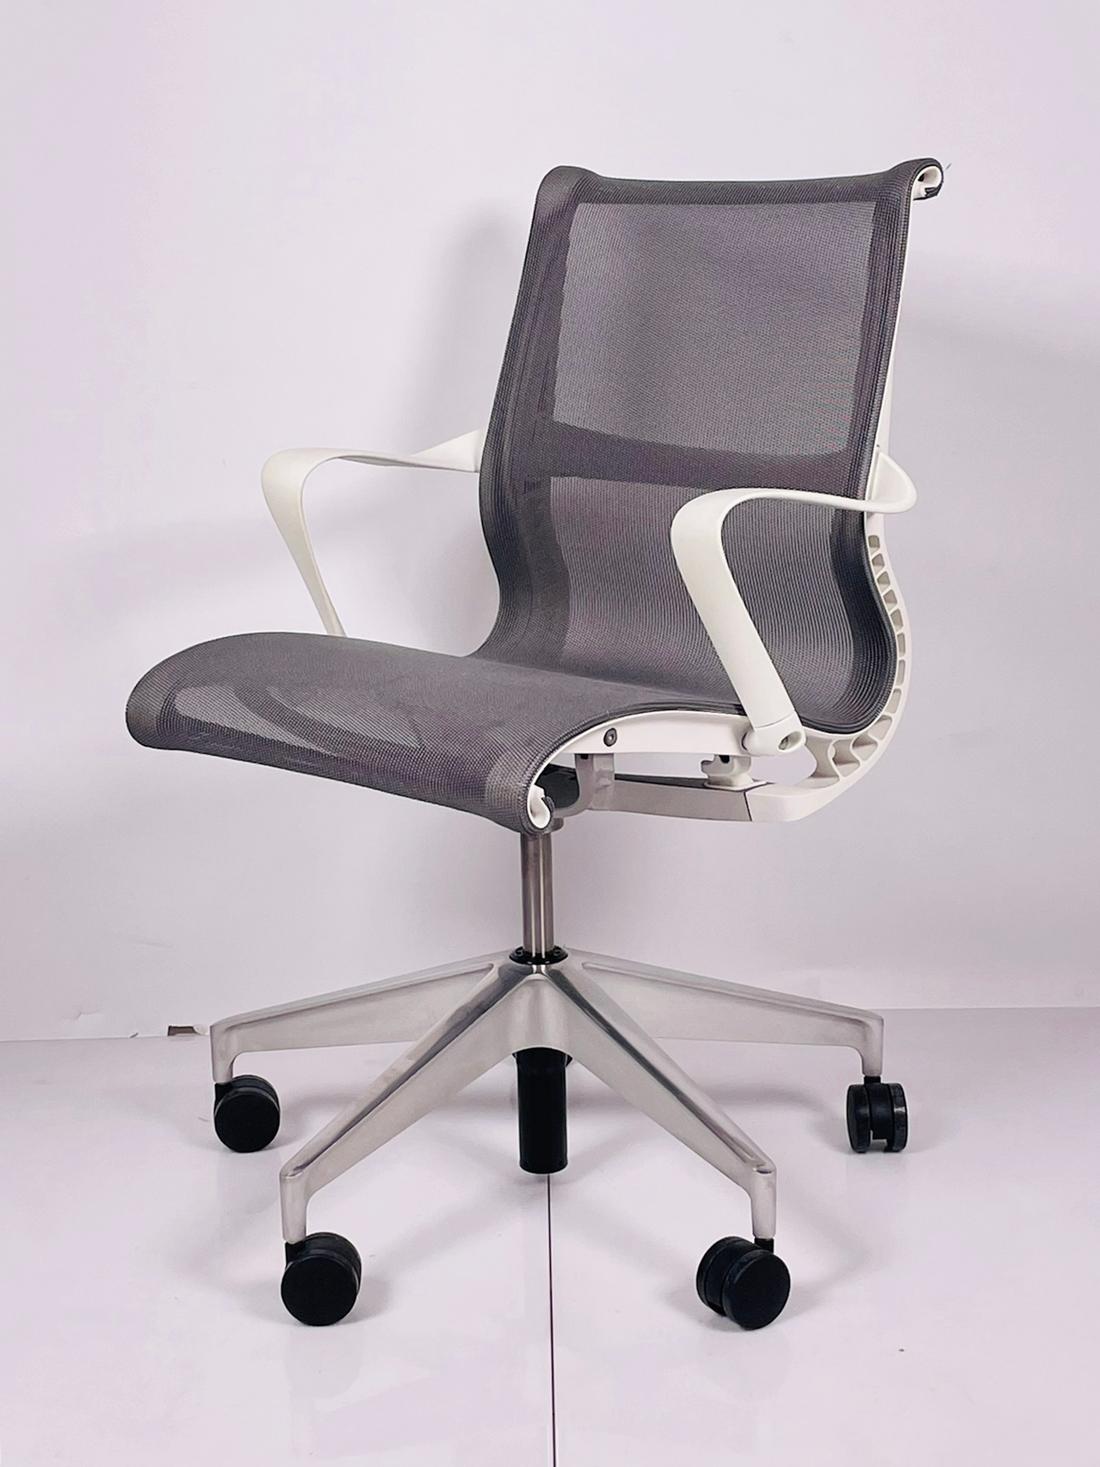 Der Setu Chair definiert Flexibilität, indem er sich mit dem Benutzer mitbewegt, mit einer klaren Ästhetik, die in nahezu jeden Wohn- oder Büroraum passt. Es ist kein Zufall, dass dieser Stuhl für einen gesunden Rücken konzipiert ist - Setu ist